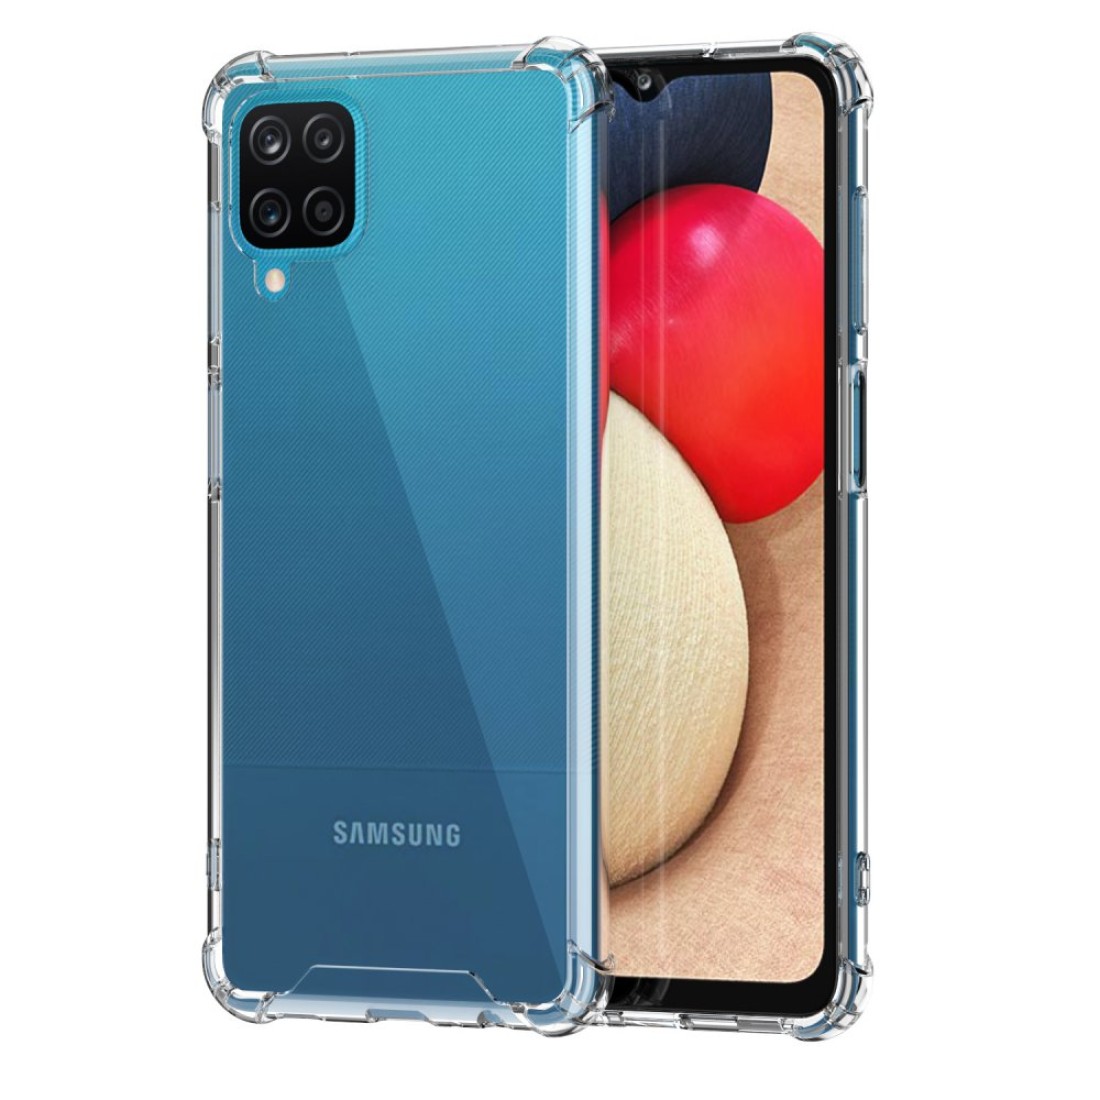 Samsung Galaxy A12 Kılıf Olex Tpu Silikon